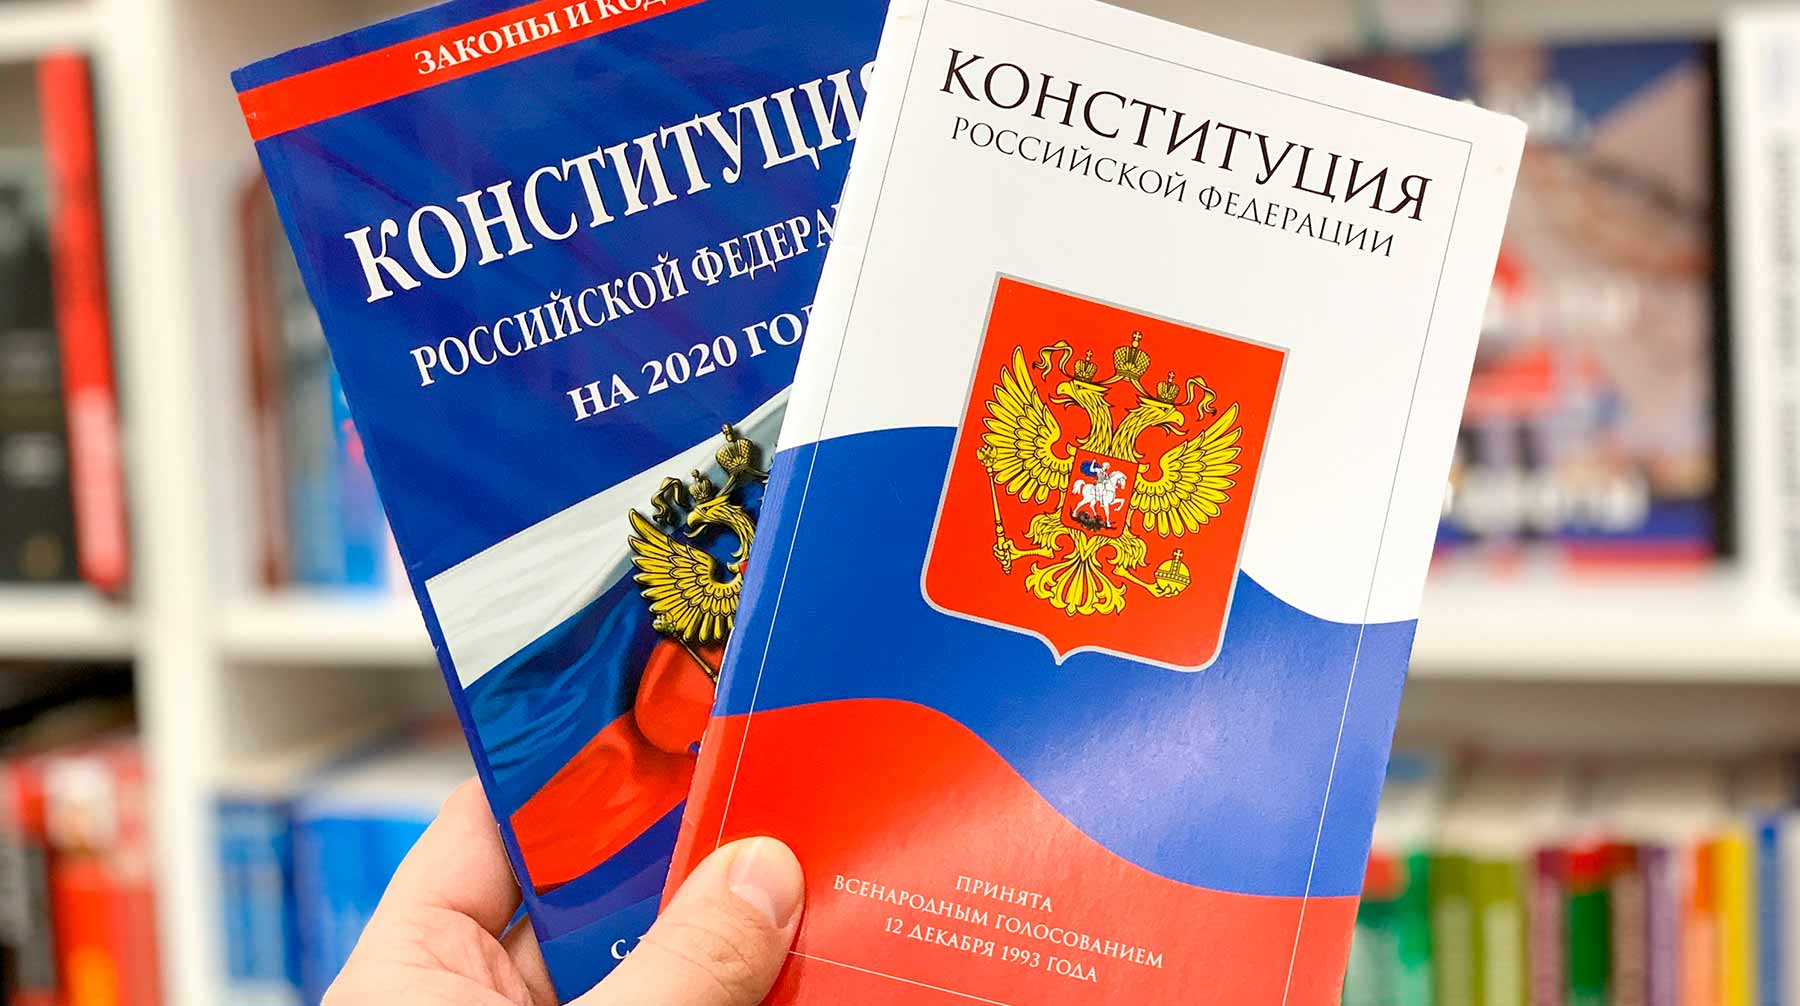 Также глава государства предложил выдавать копию Основного закона вместе с первым паспортом Фото: © АГН Москва